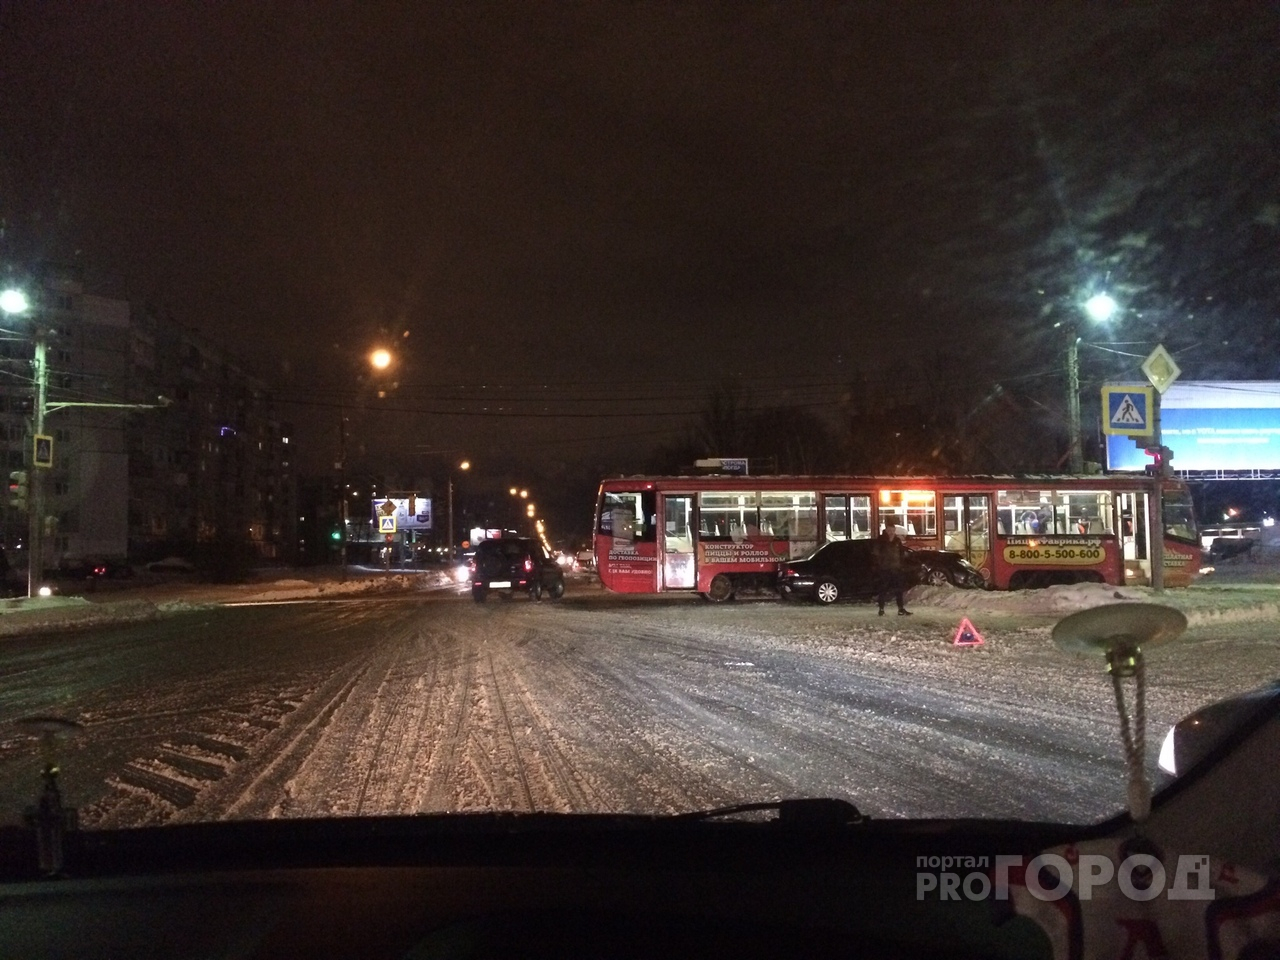 Пассажиры в шоке: иномарка угодила под трамвай в Ярославле